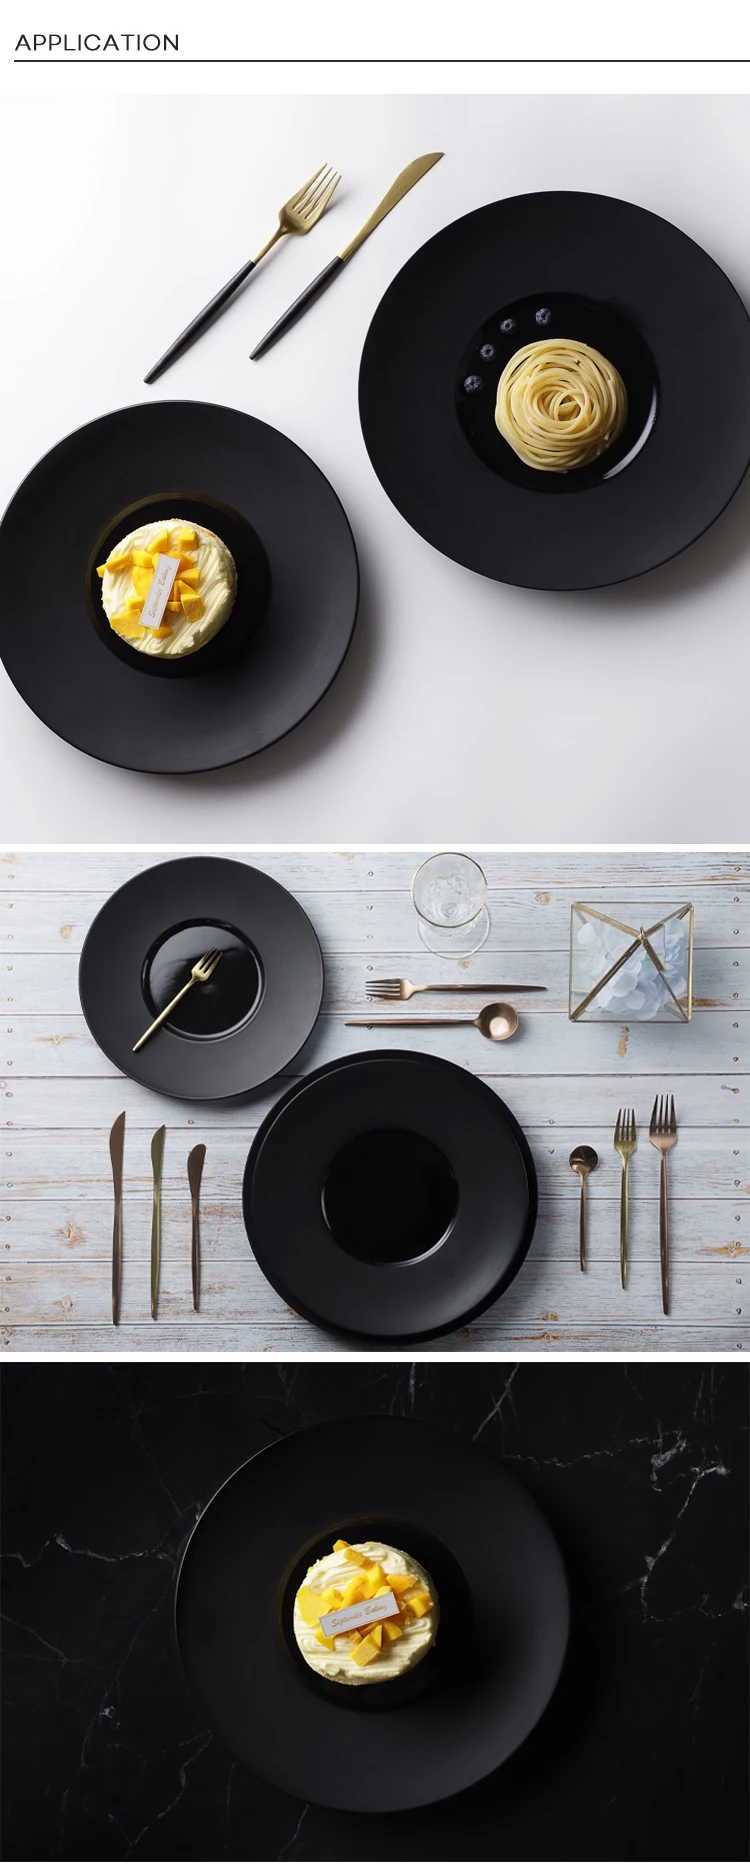 28ceramics Japanese Tableware Black Dinner Plates, Japanese Ceramic Tableware 10/11/12 Inch Black Plates For Restaurant&